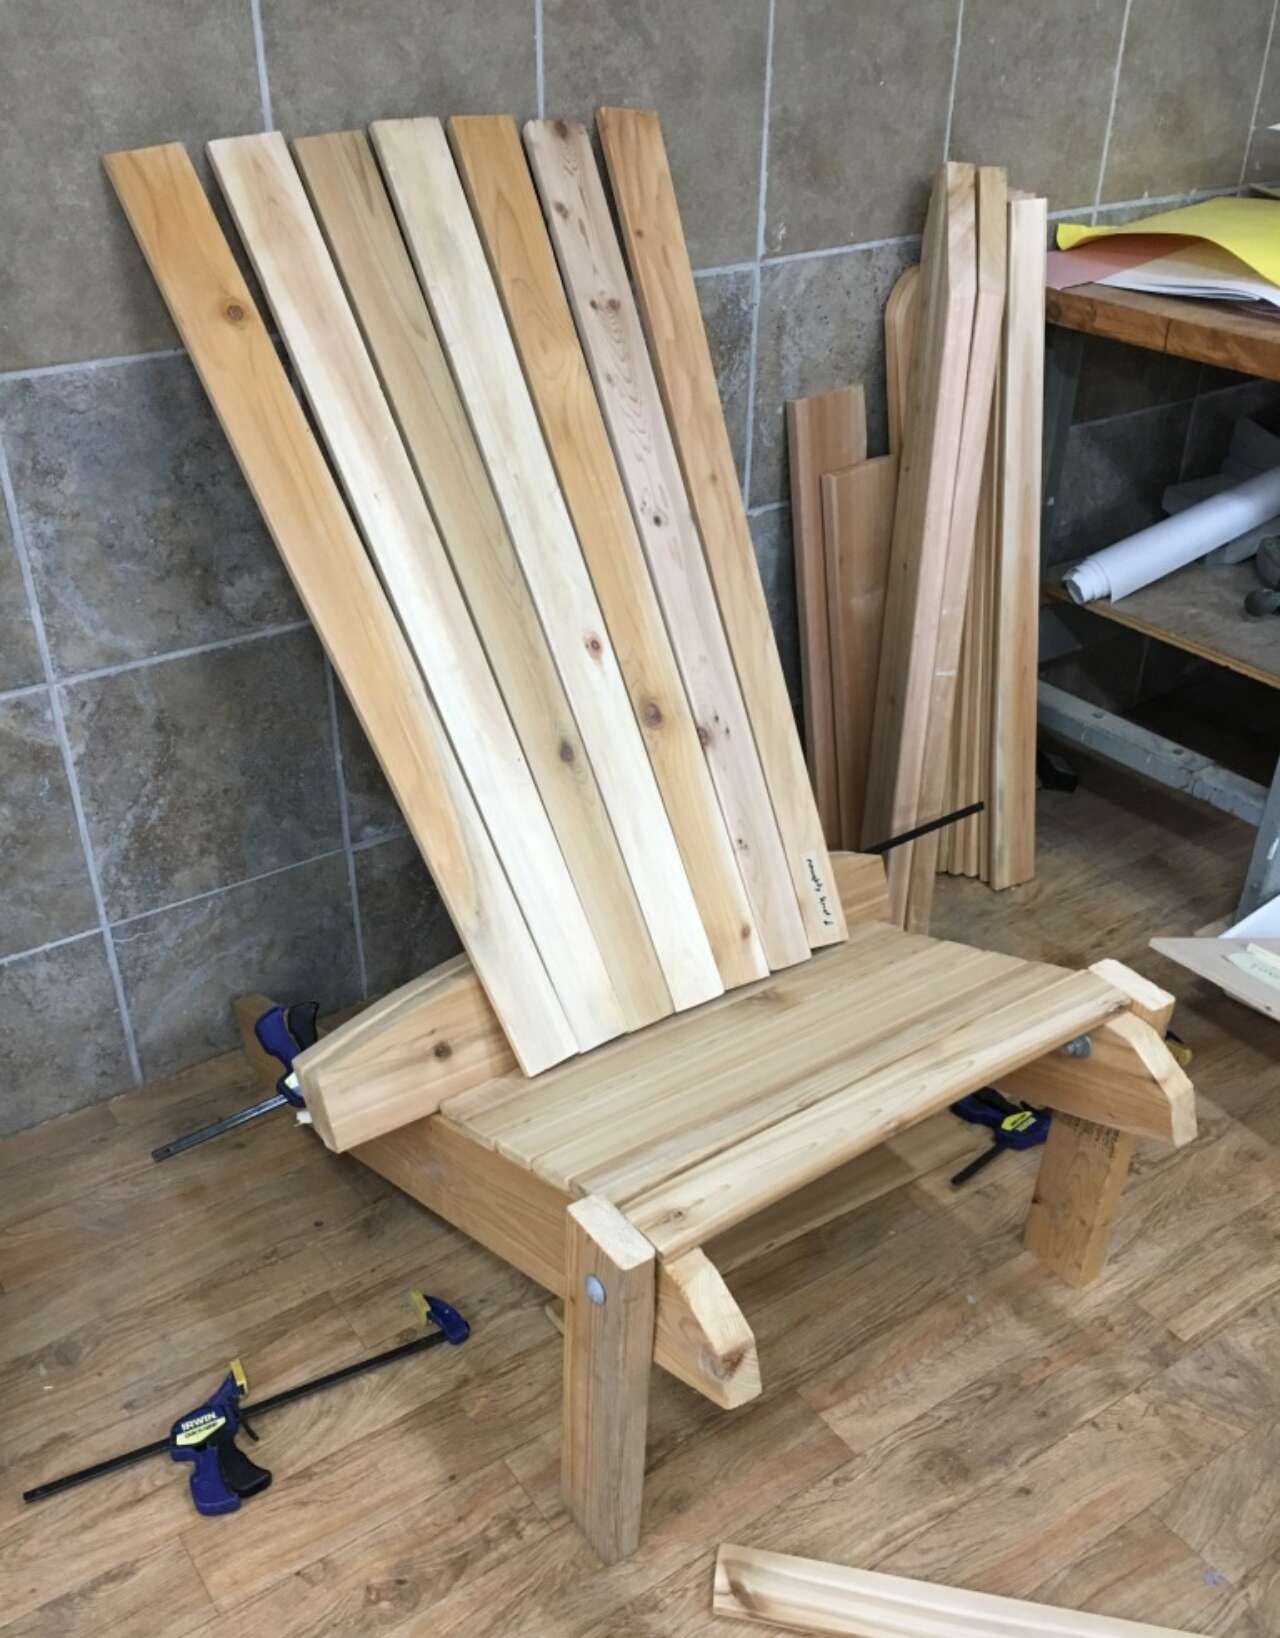 Muskoka chair before staining